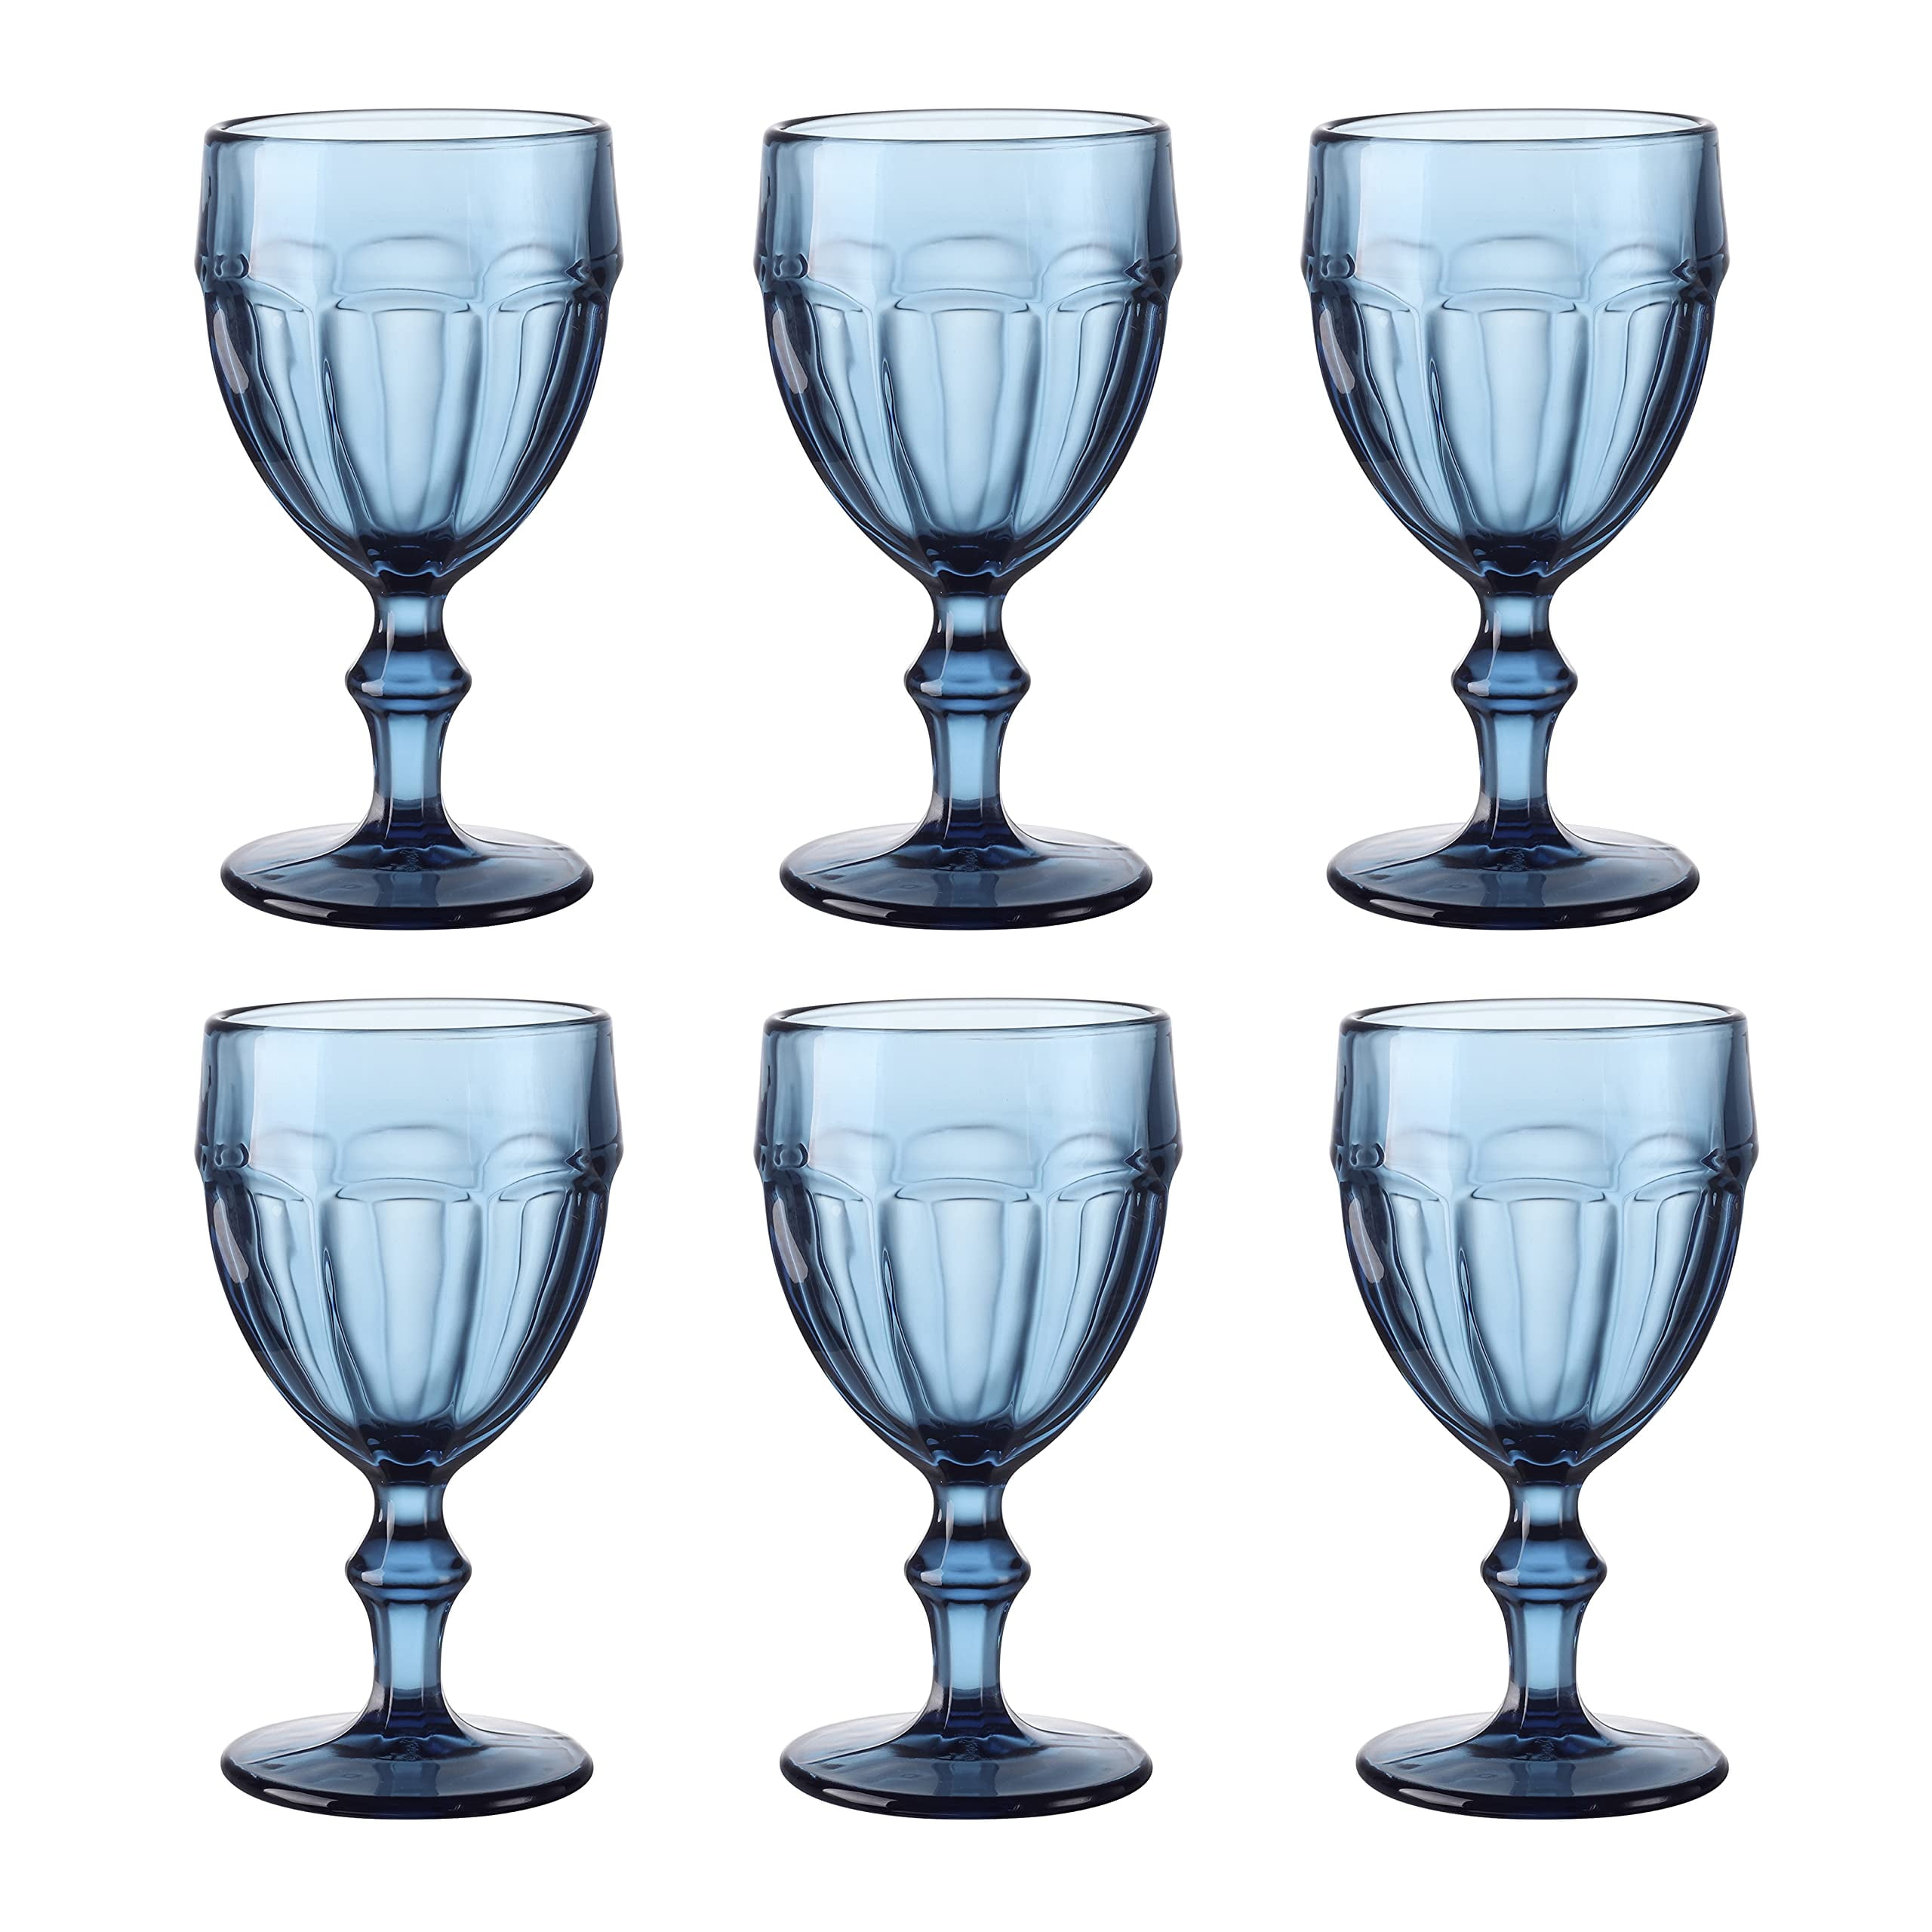 Navaris Blue Square Wine Glasses (Set of 4) - Colored Wine Glasses with Stems - Colored Glassware with Stem for Serving Wine, Cocktails, Beer, Dessert